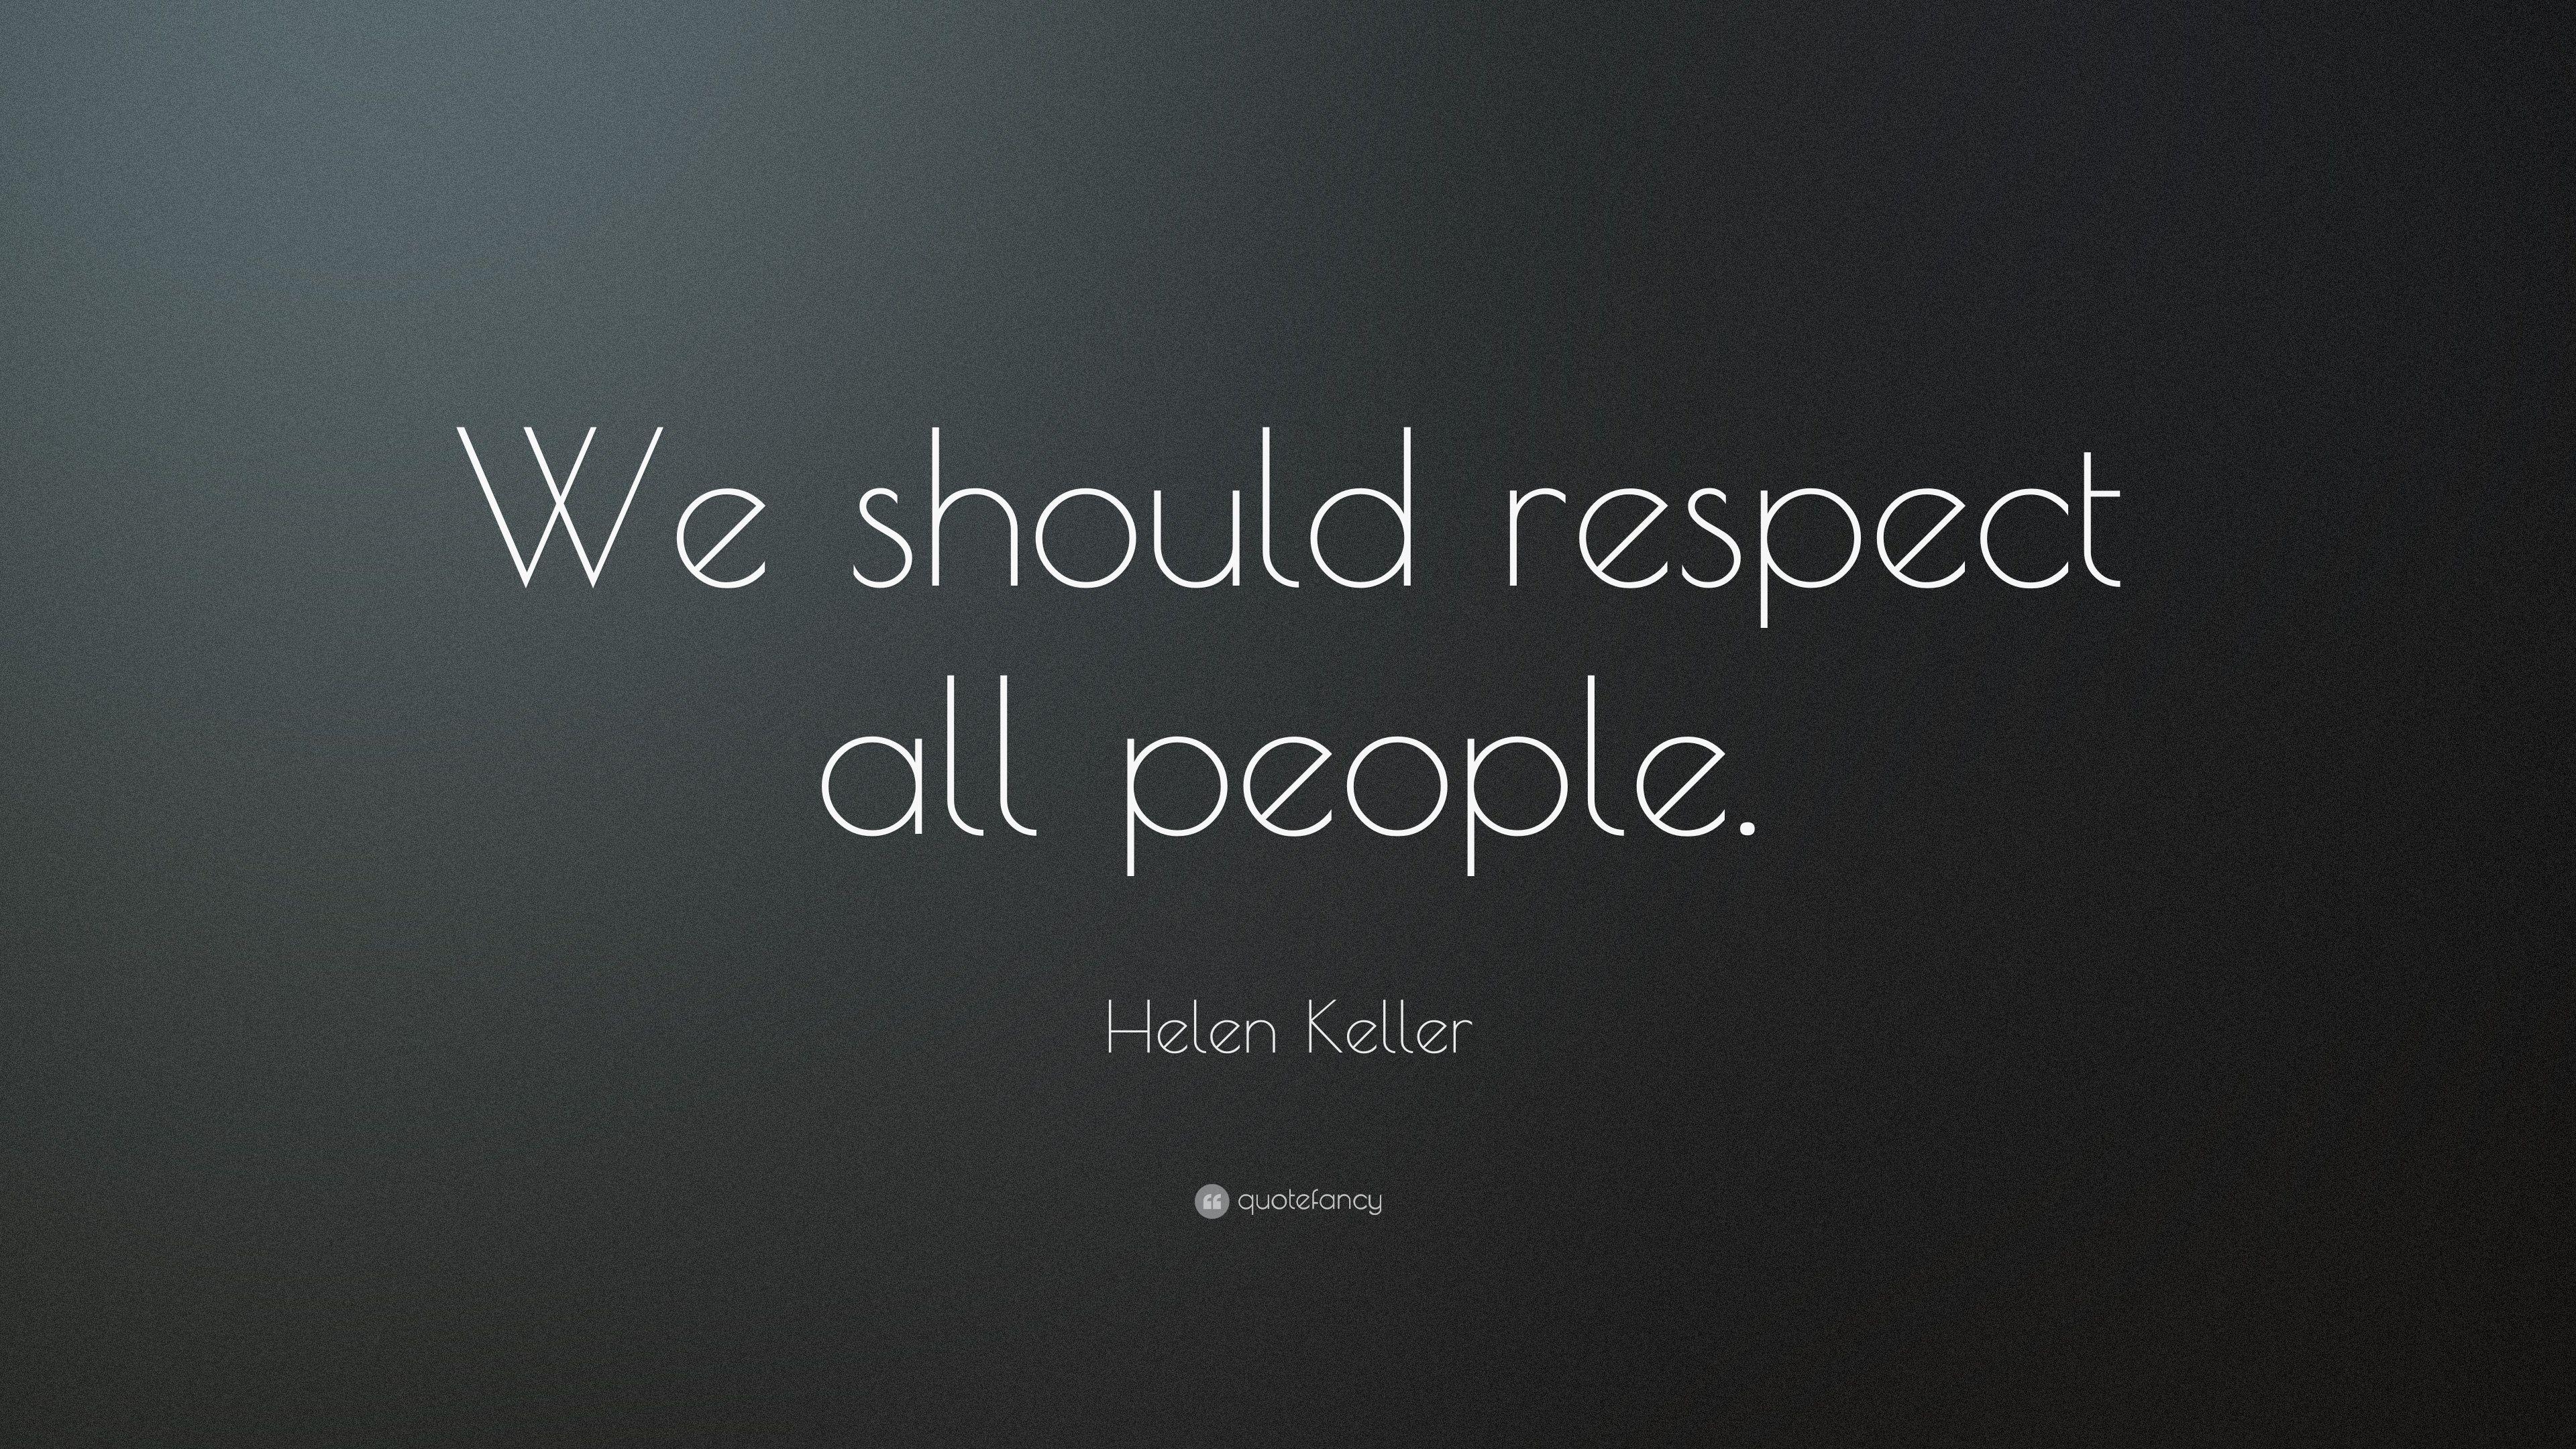 Helen Keller Quote: “We should respect all people.” 10 wallpaper